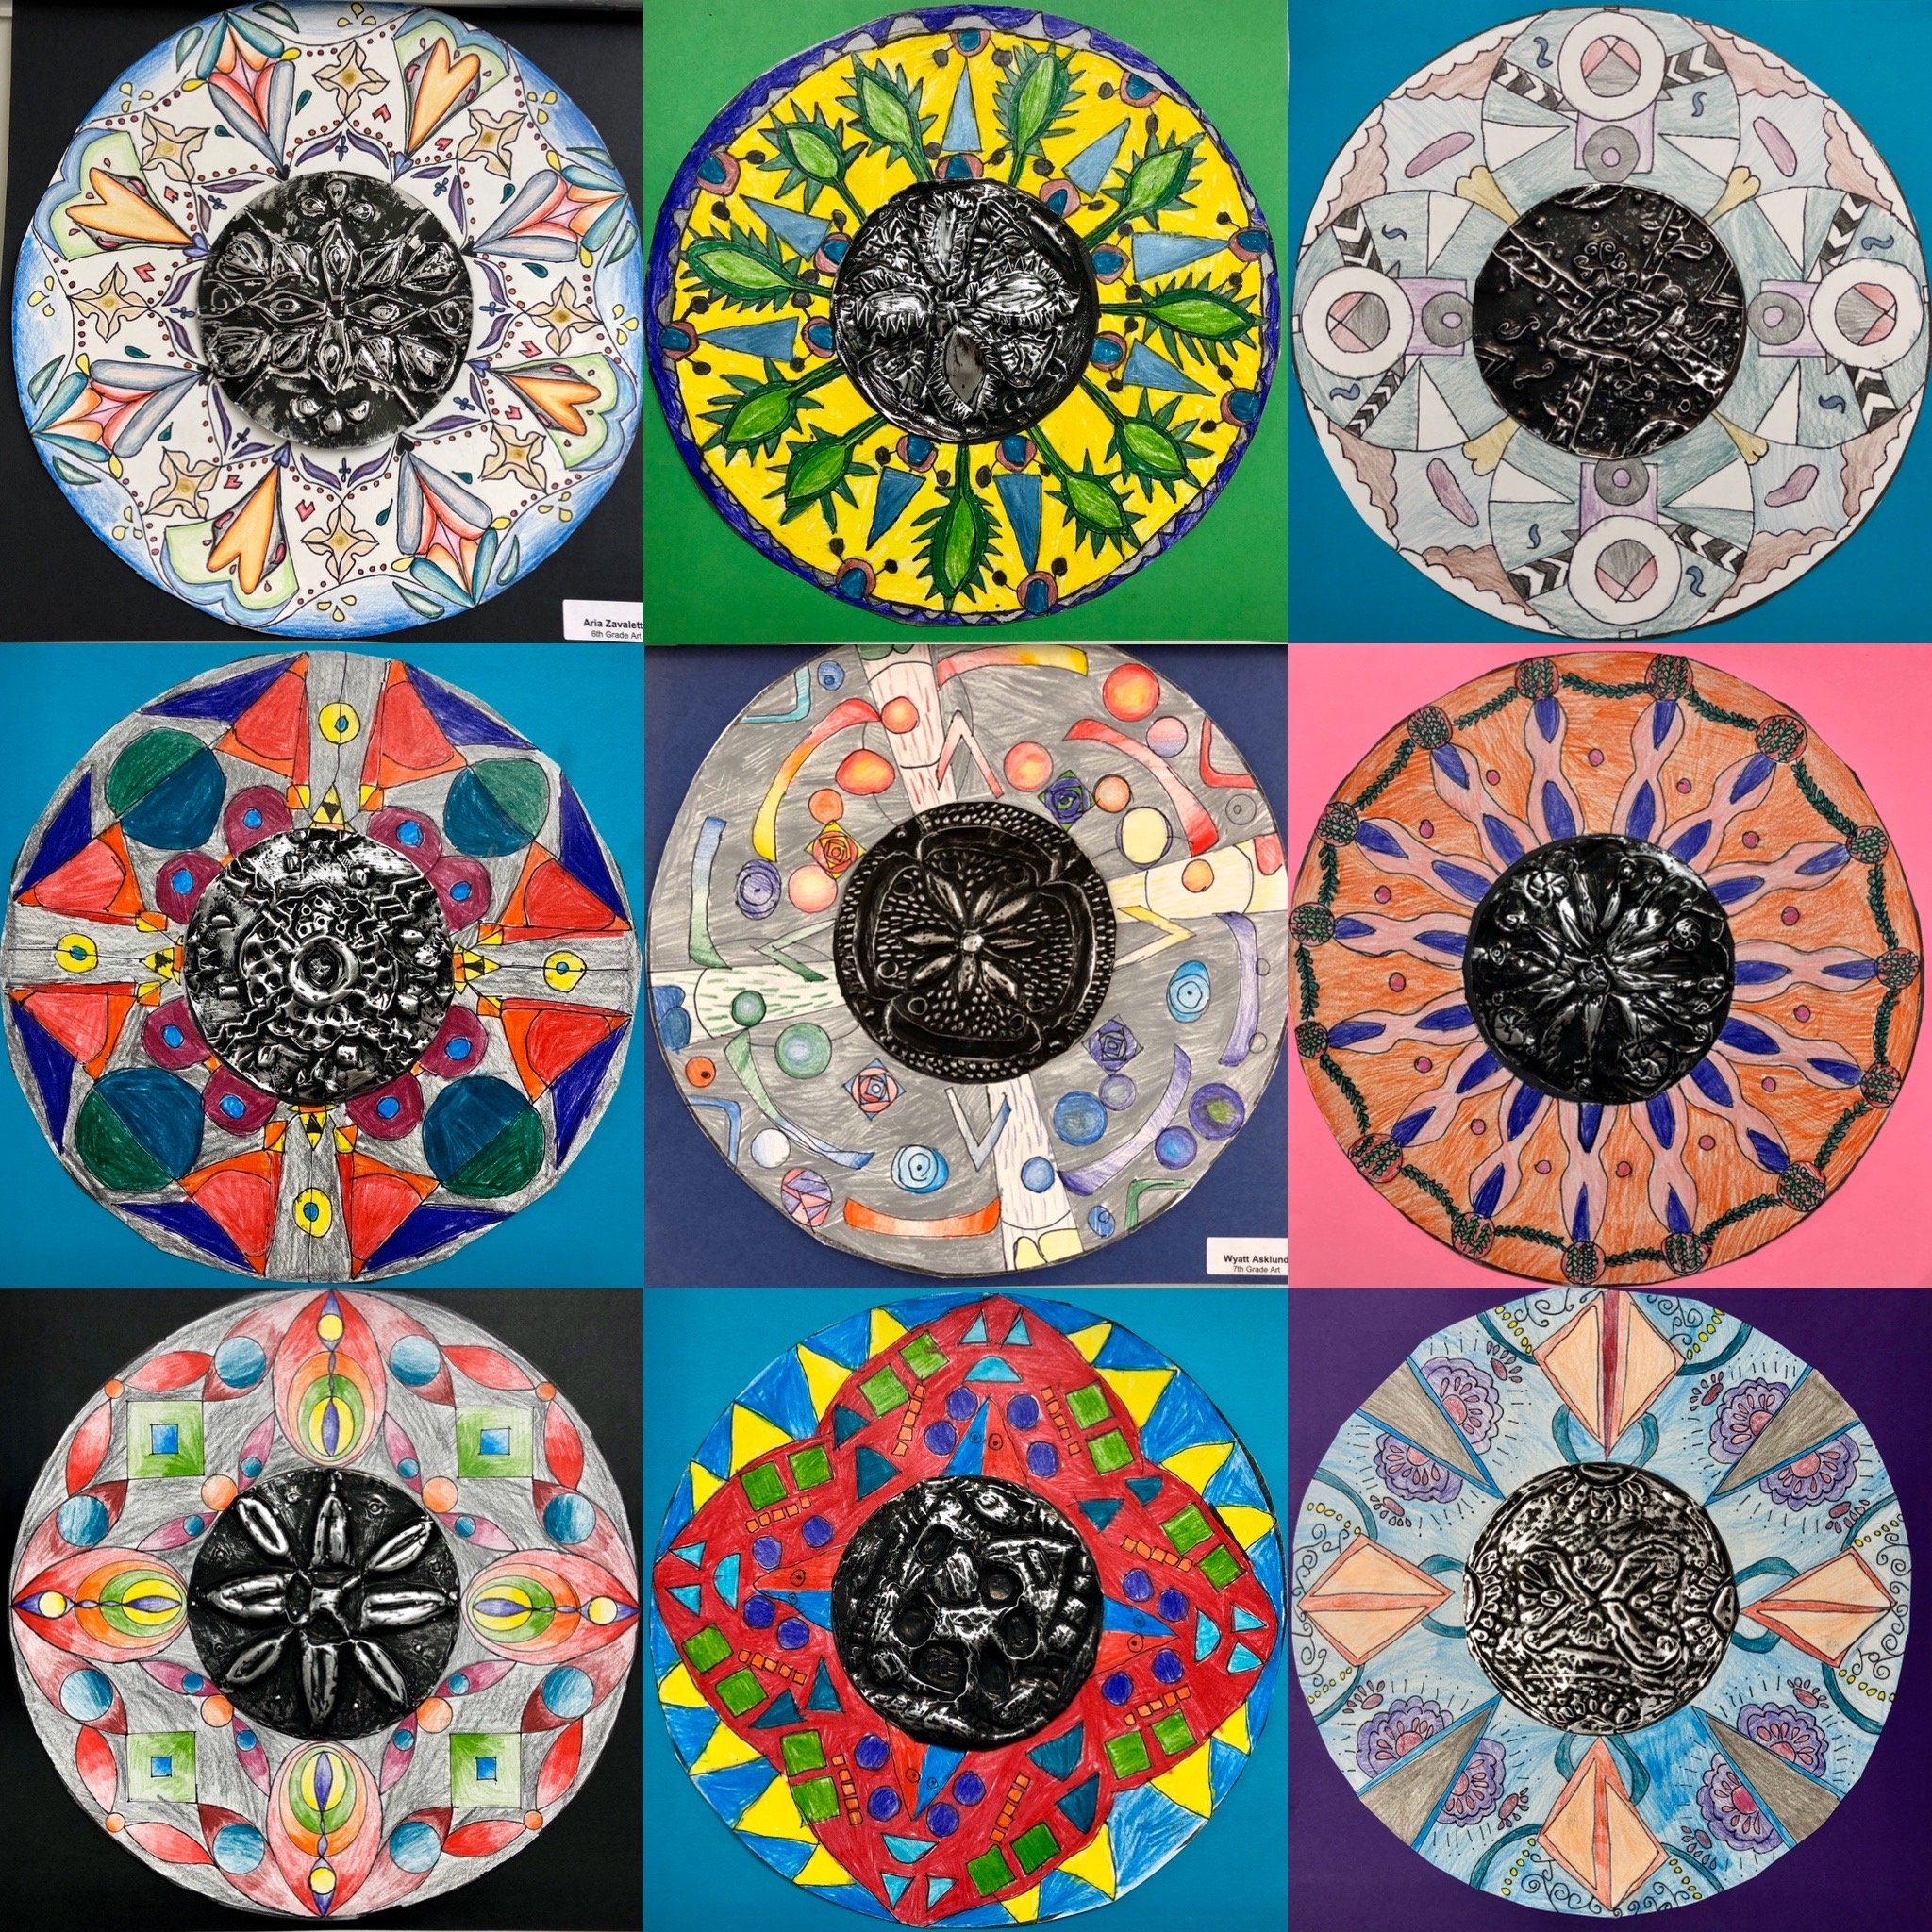 radial paintings